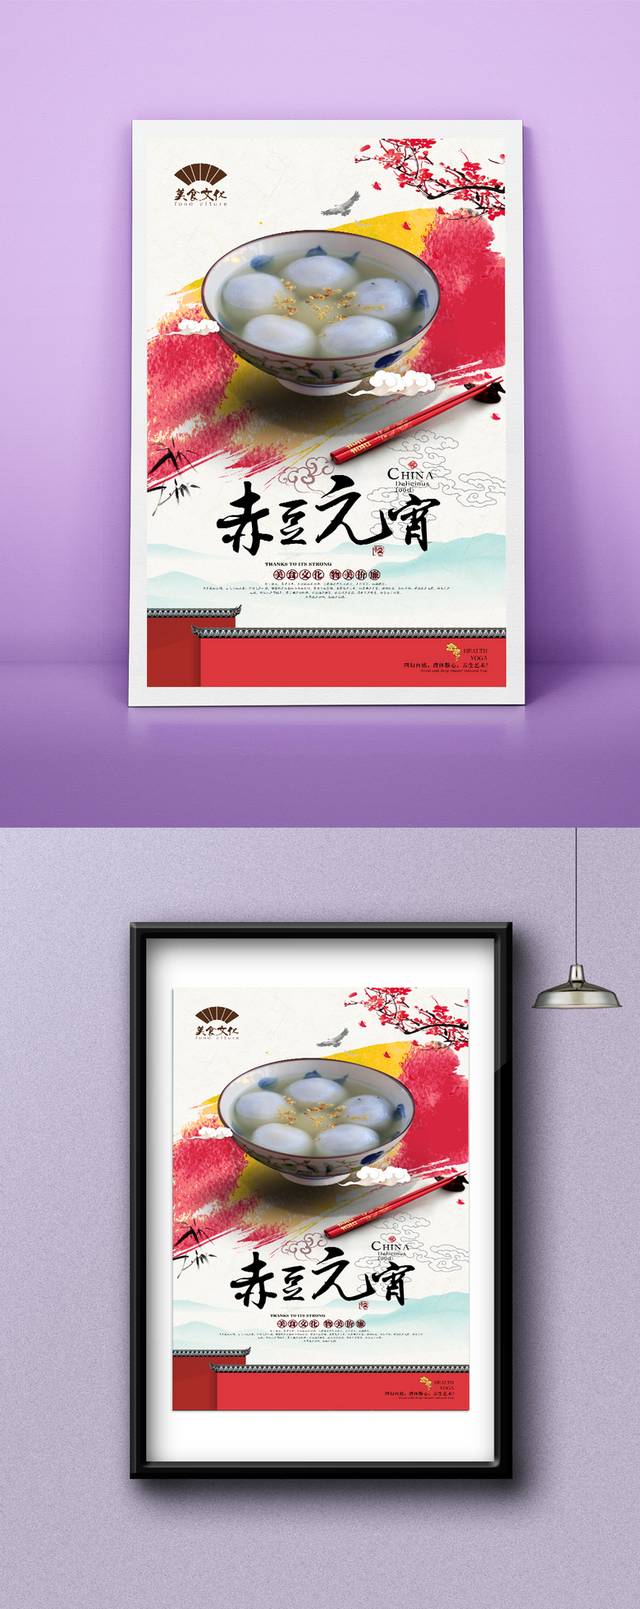 中式赤豆元宵美食促销海报